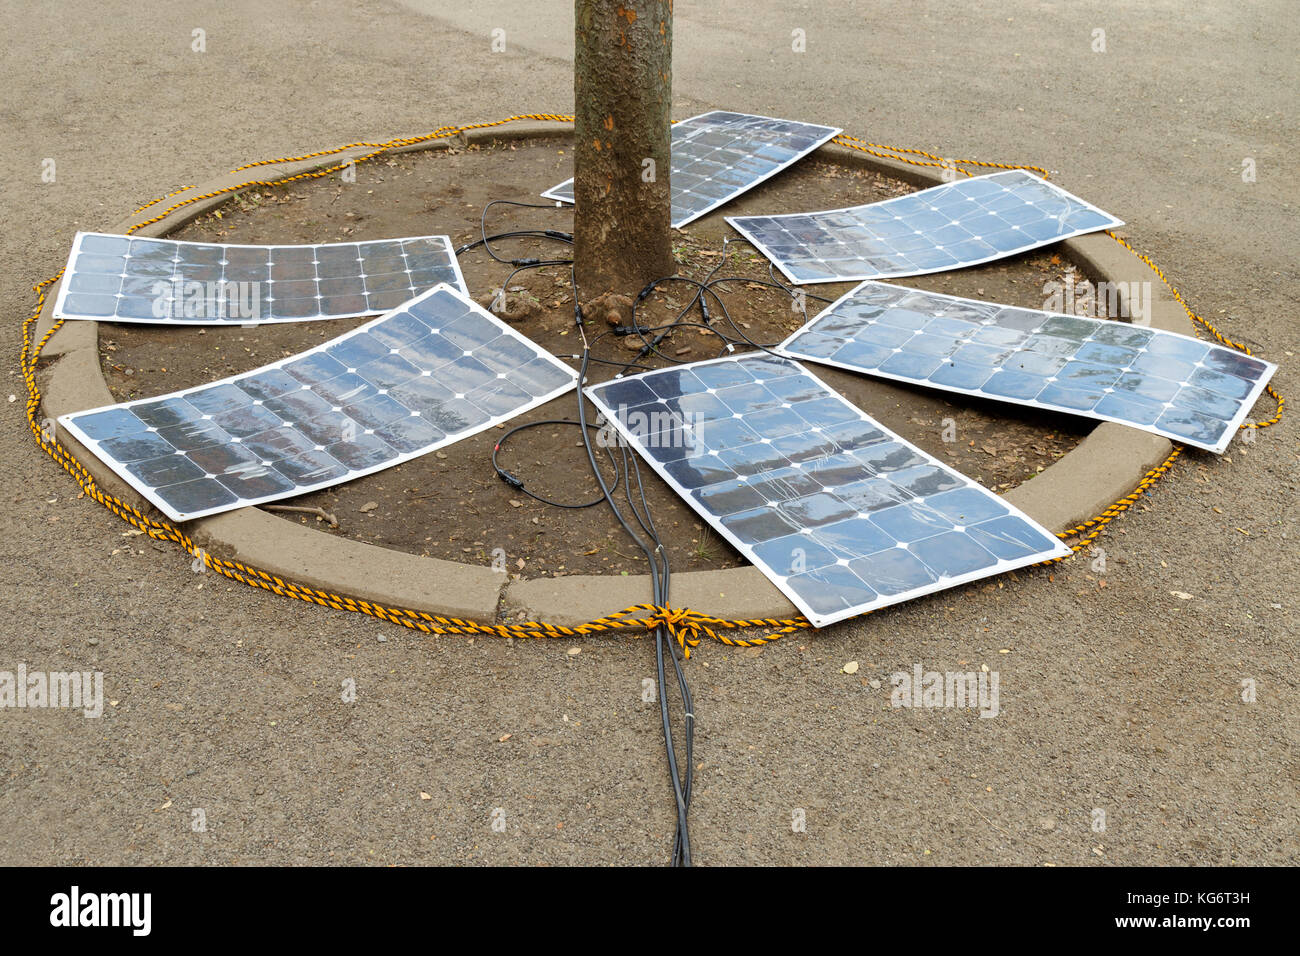 https://c8.alamy.com/compes/kg6t3h/los-paneles-solares-flexibles-celula-solar-monocristalino-celda-solar-flexible-eficacia-de-carga-bajo-el-arbol-en-el-suelo-concepto-de-energia-alternativa-kg6t3h.jpg